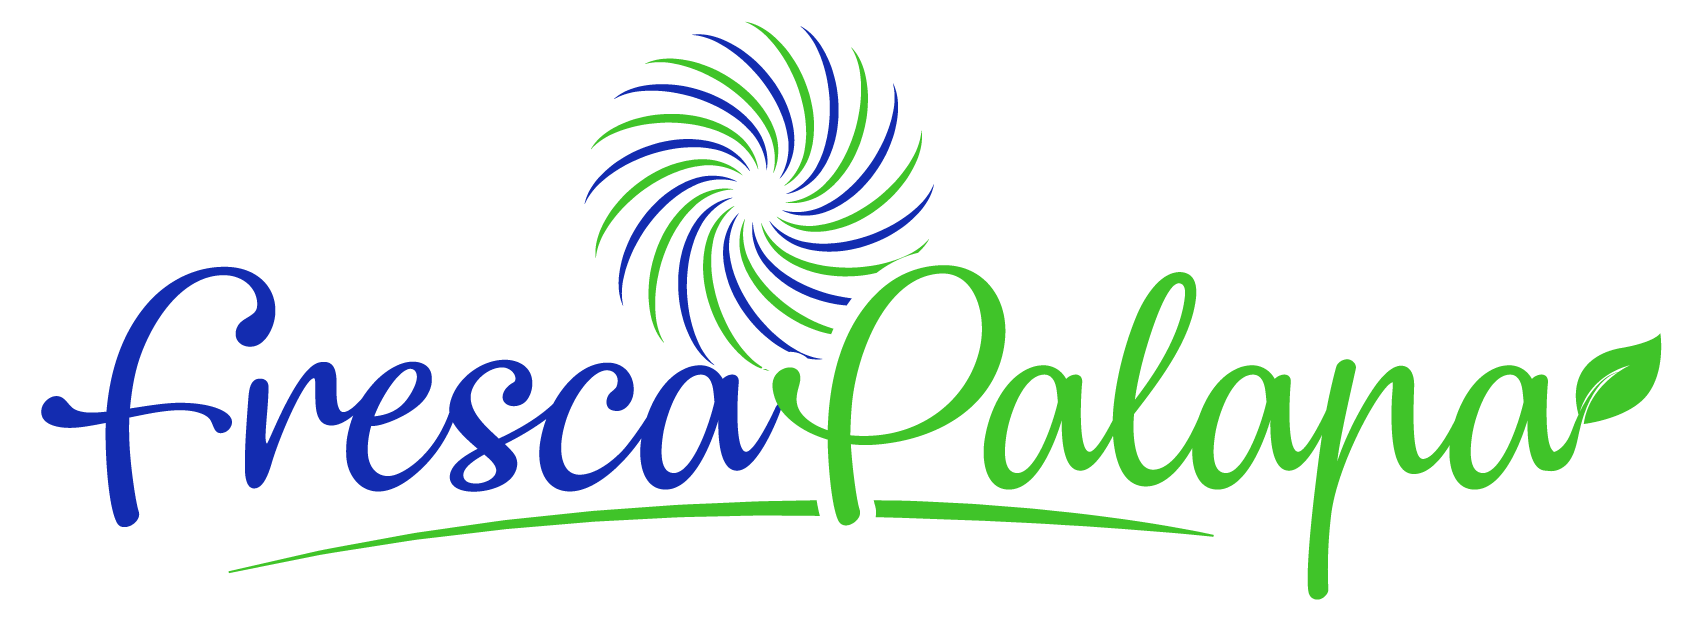 Fresca Palapa Logo